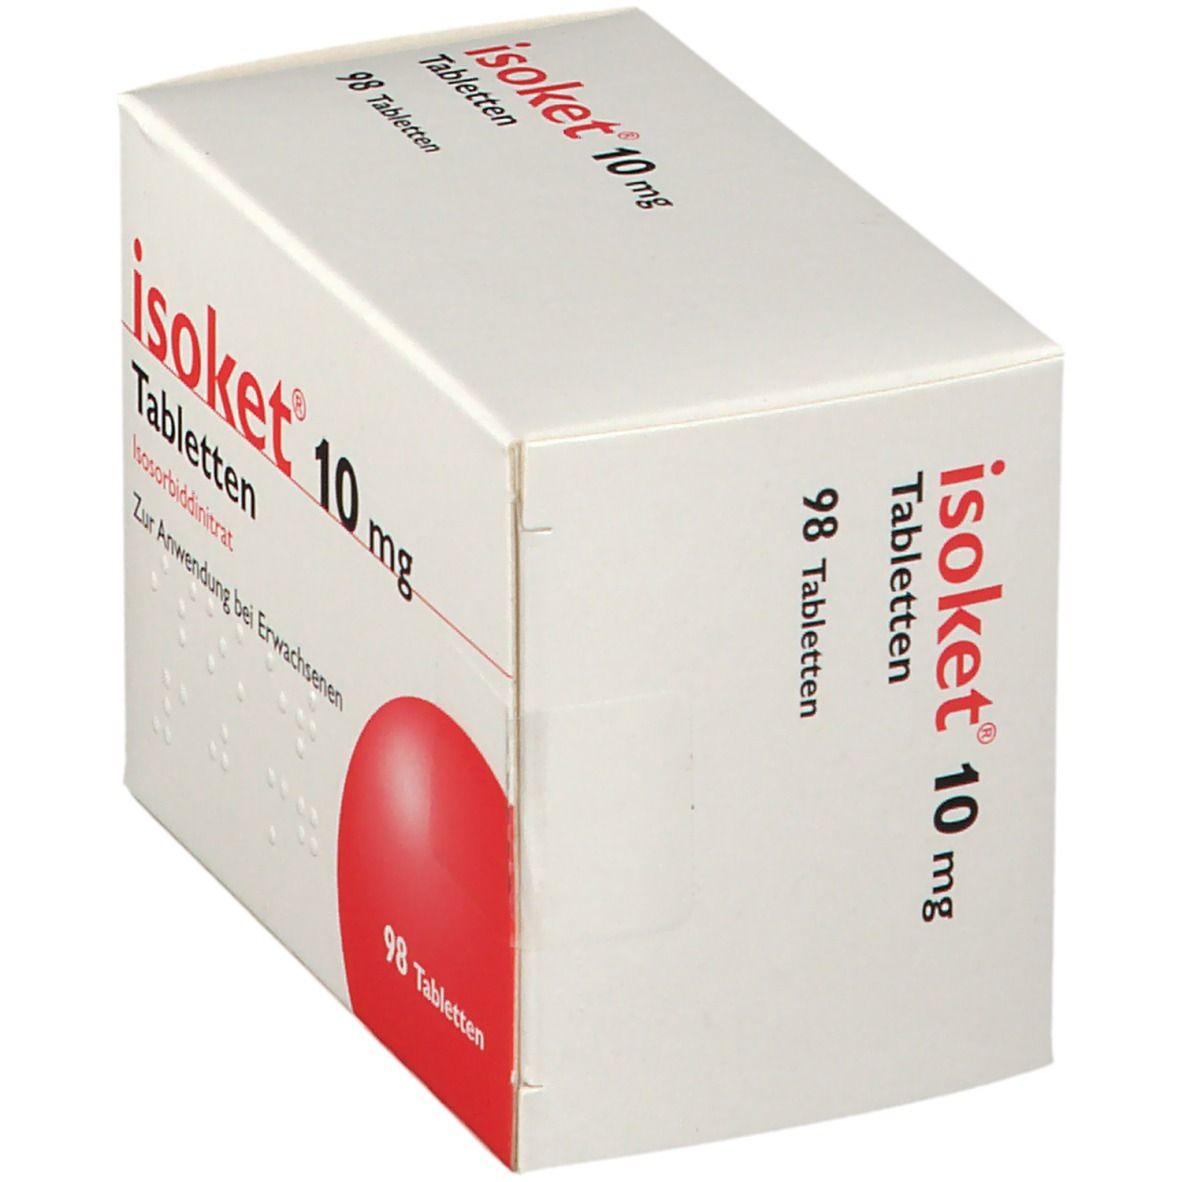 isoket® 10 mg